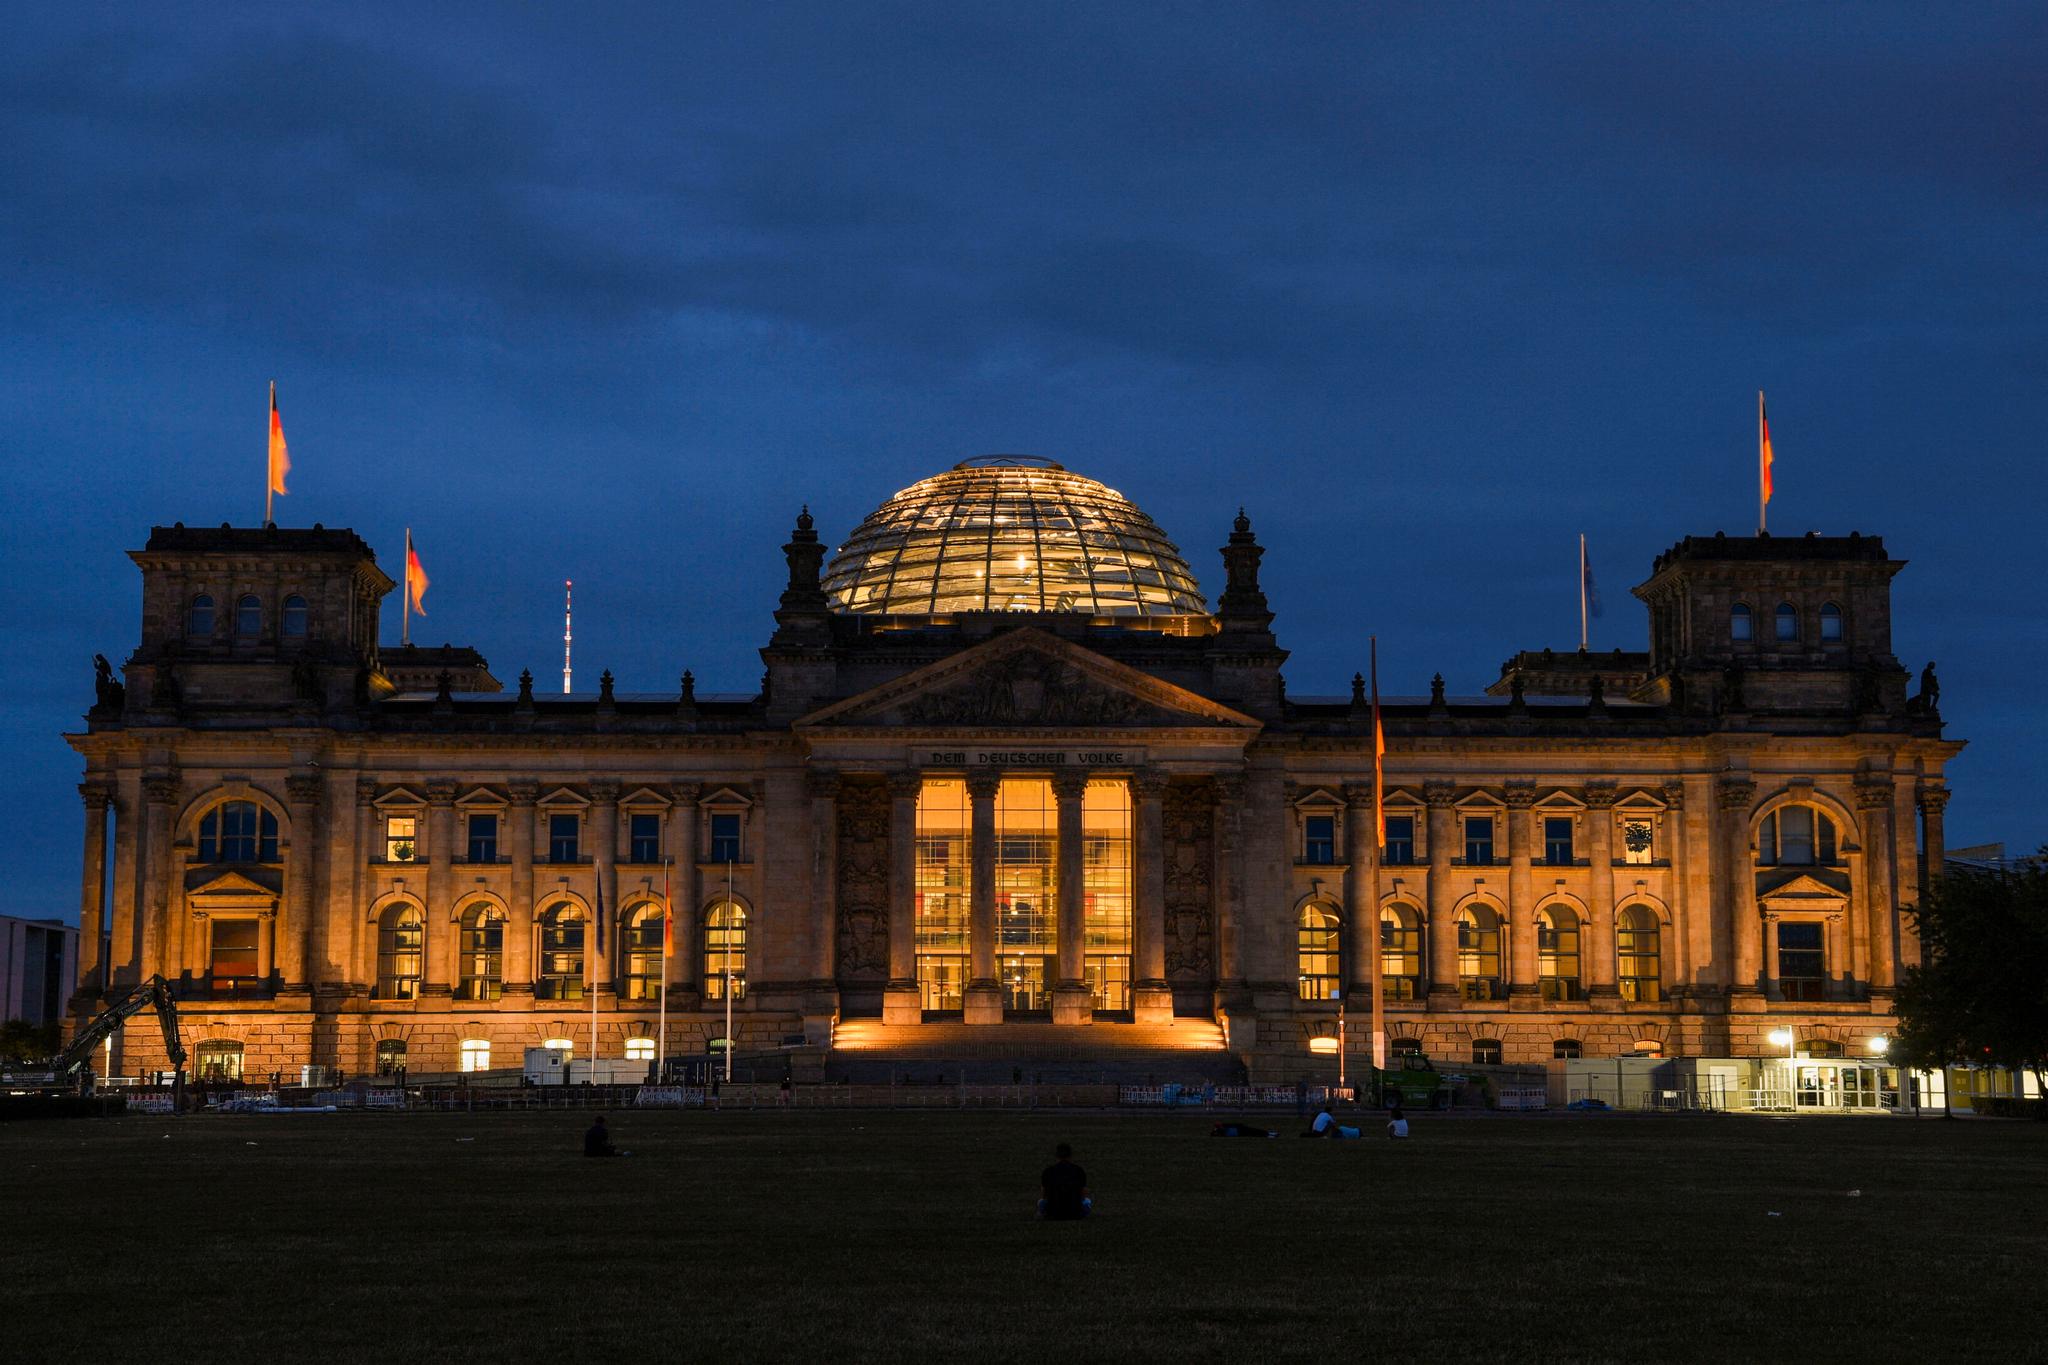 Tyske medier skriver at kuppmakerne skal ha planlagt å storme Forbundsdagen. Den tyske nasjonalforsamlingen holder til i riksdagsbygningen i Berlin. Brannen i denne bygningen i 1933 var en sentral forutsetning for nazistenes maktovertagelse i Tyskland. 